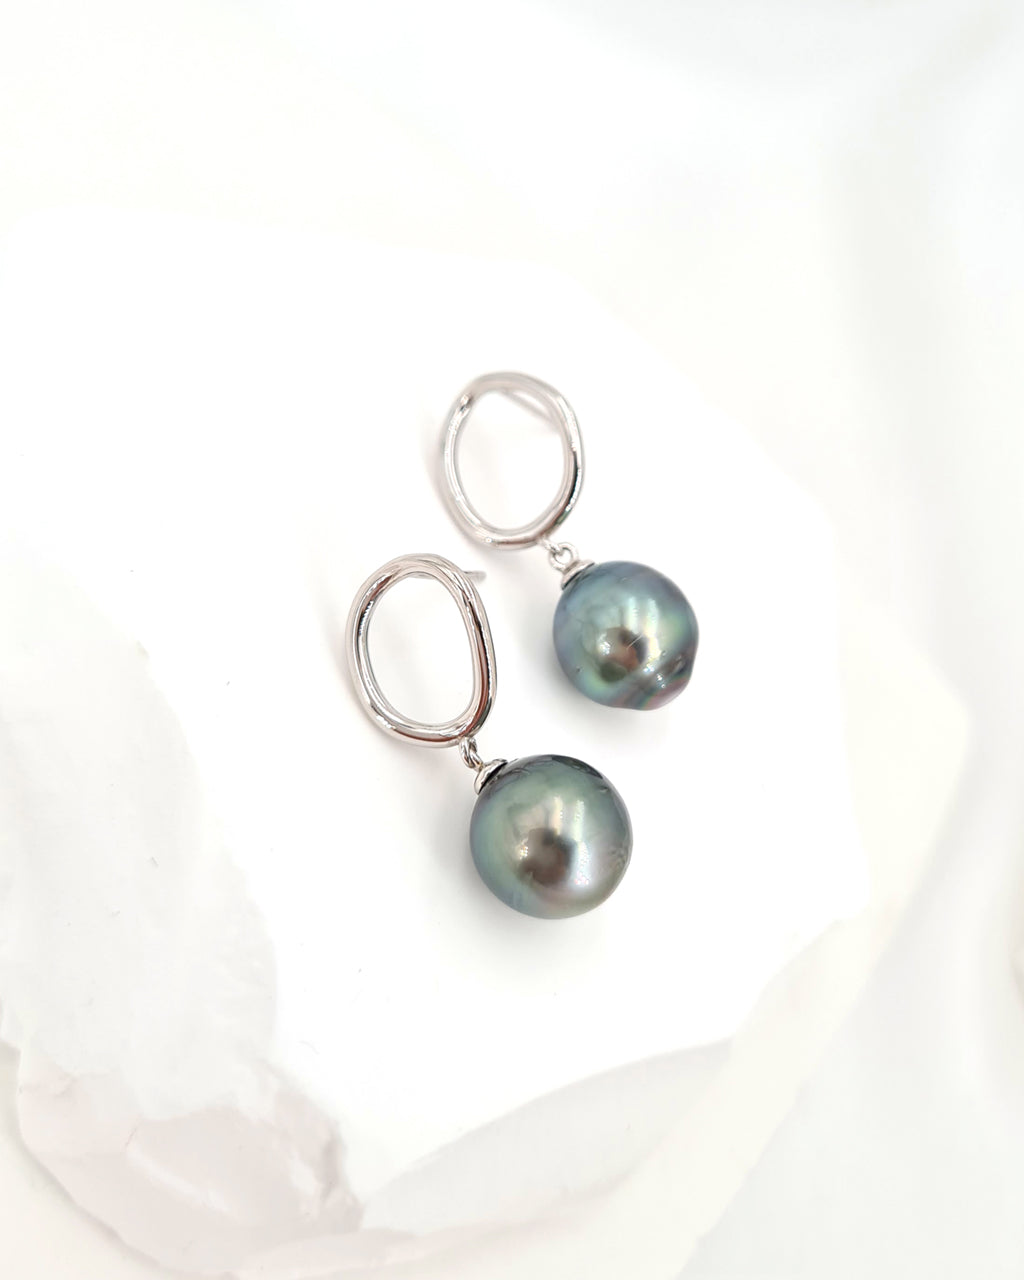 Tahitian Pearl Earrings - Circle Drop Sterling Silver Earrings Handmade in Singapore